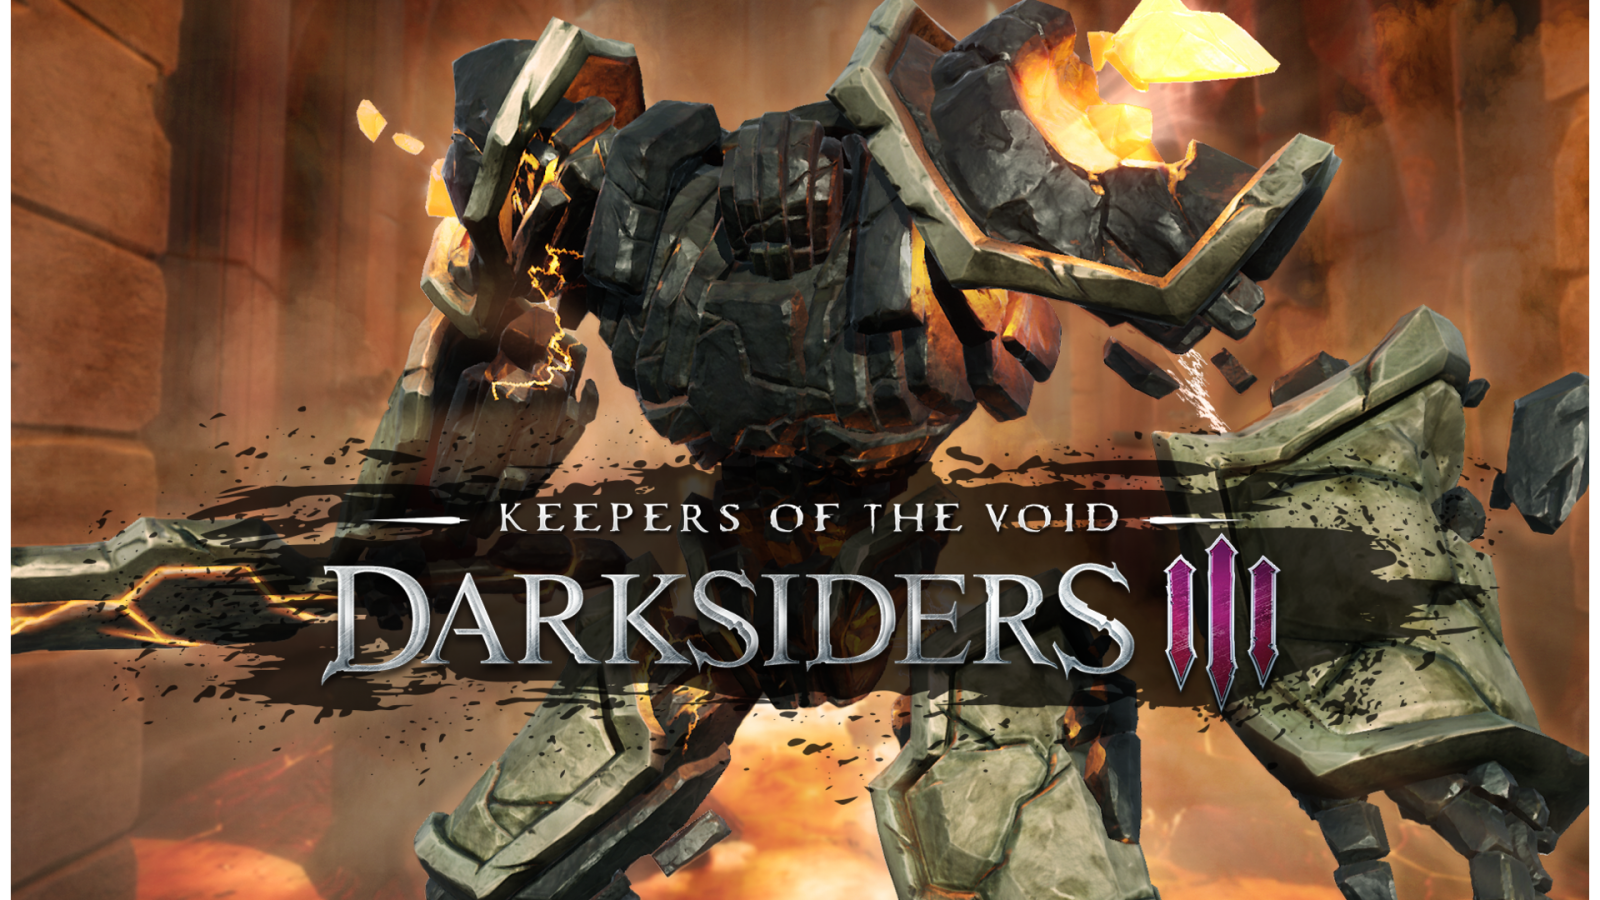 Darksiders III - PlayStation 4 Video Game